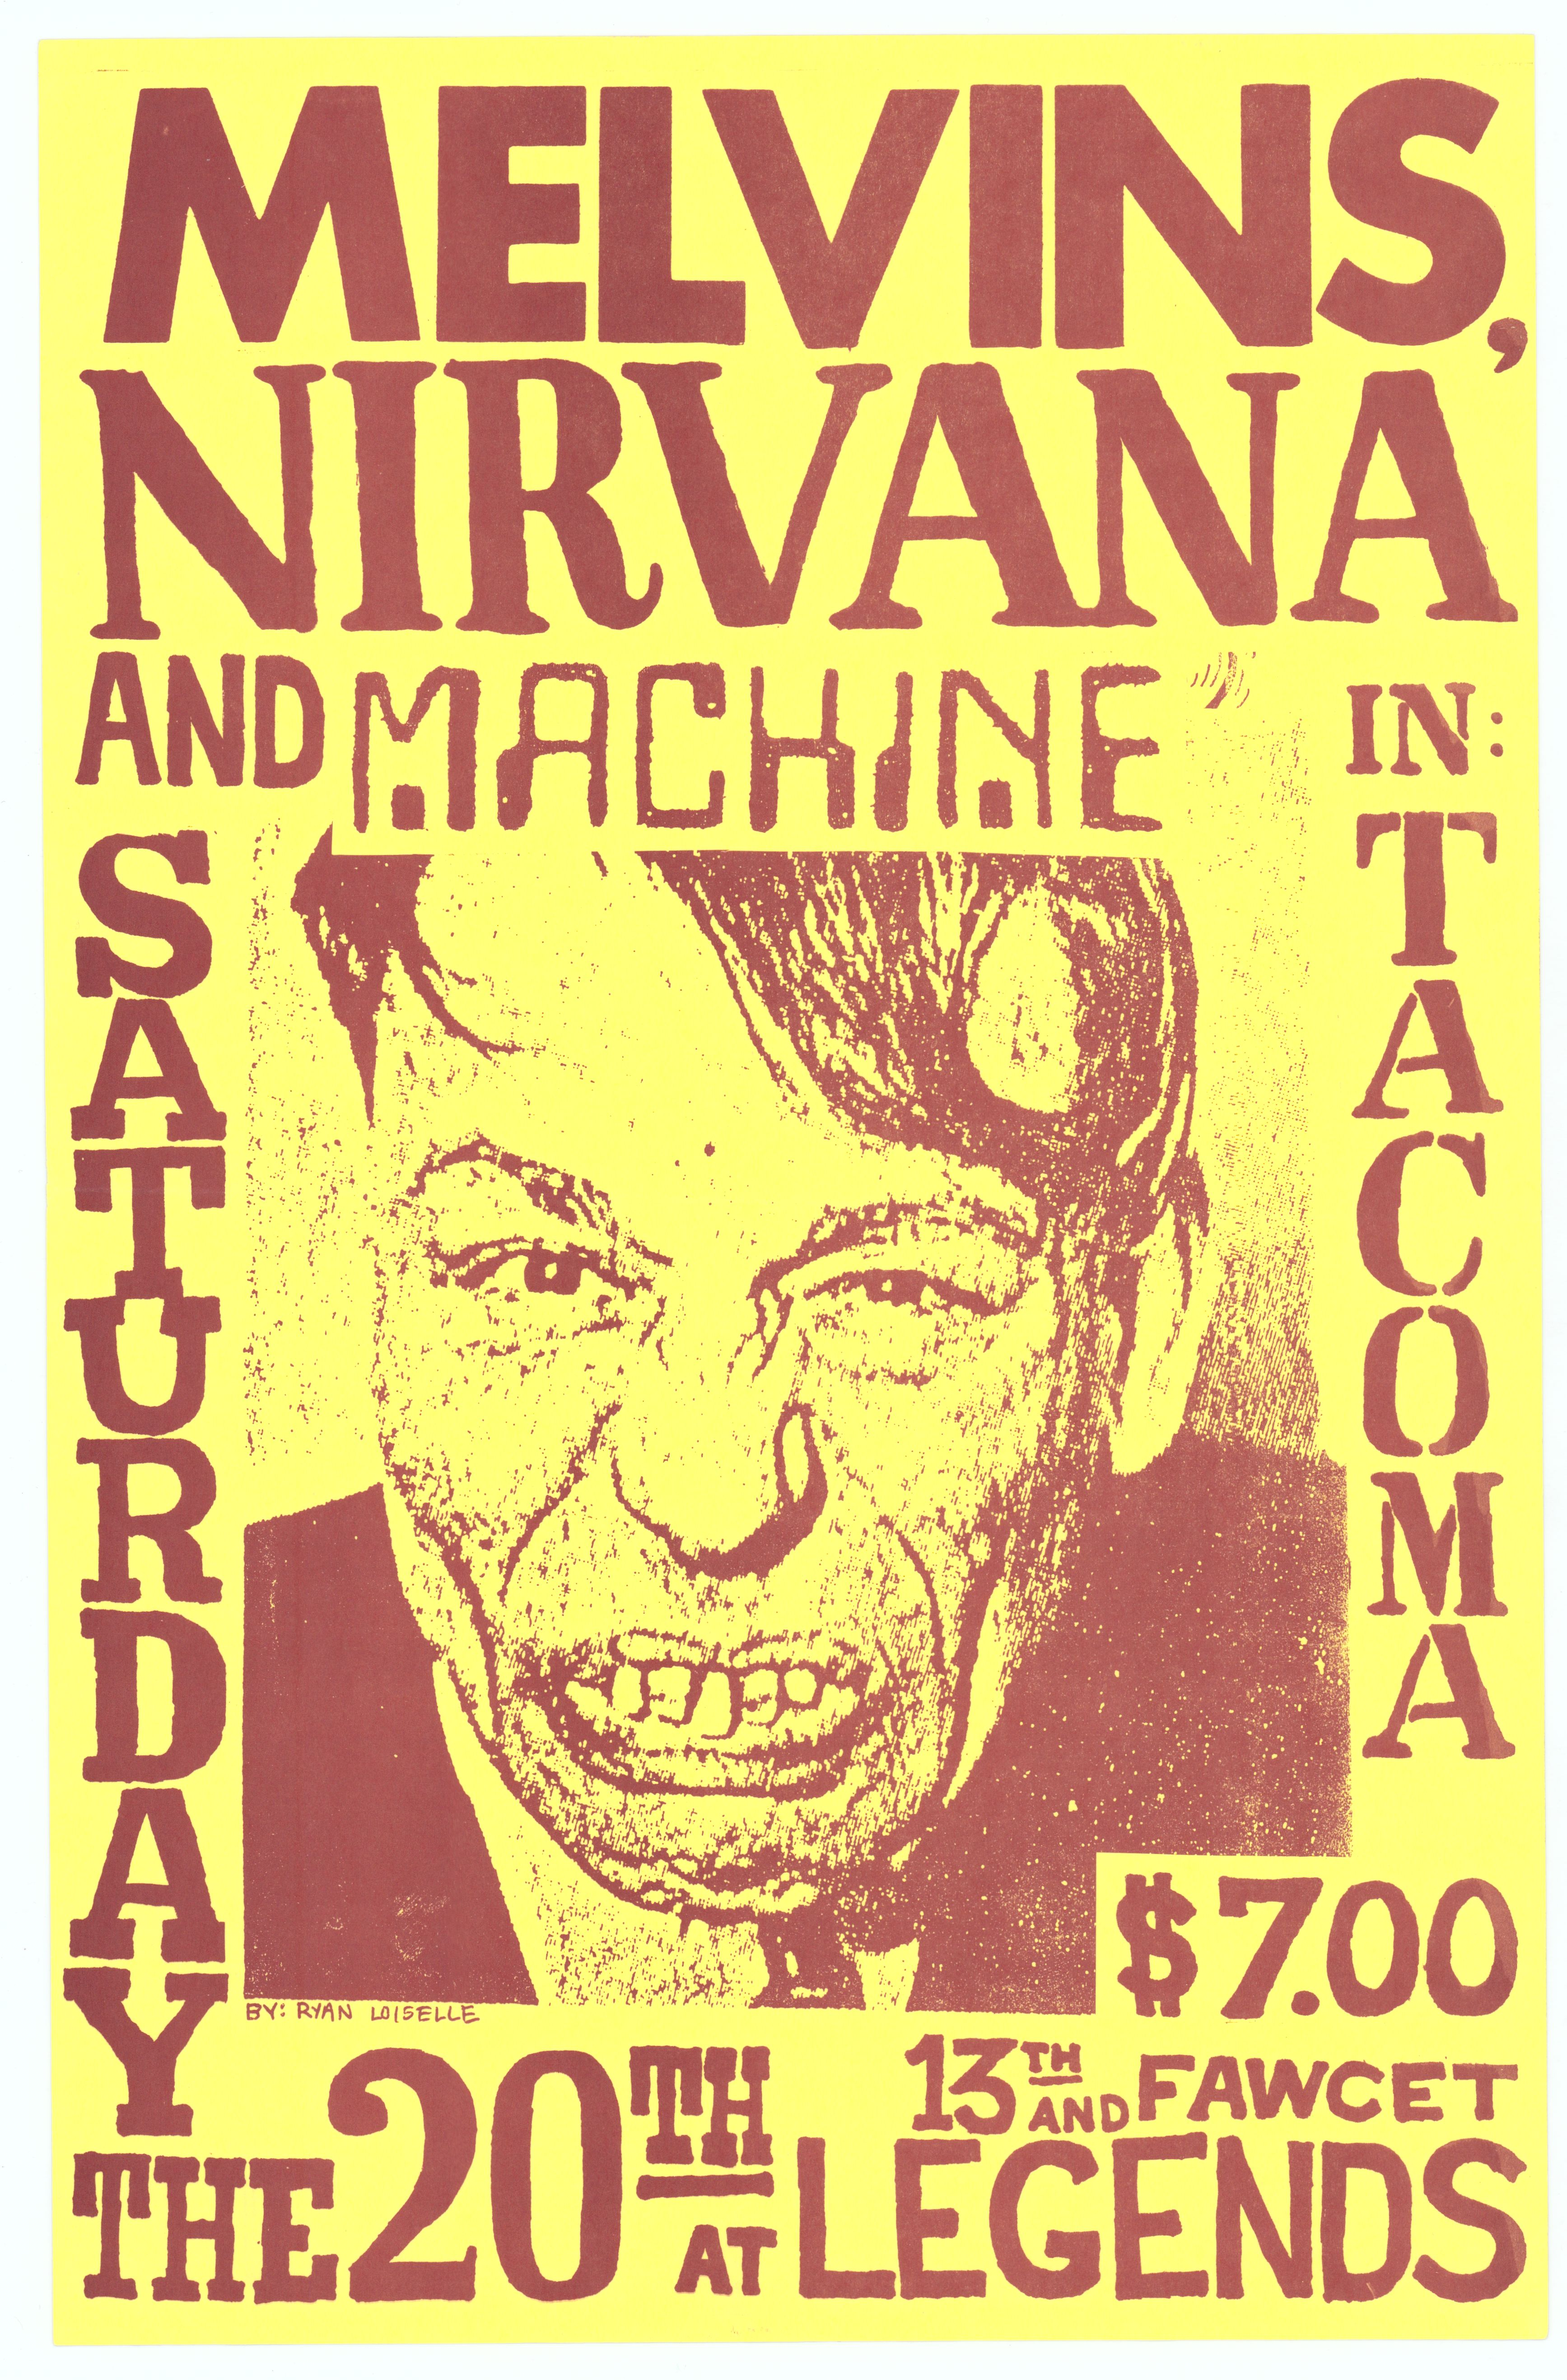 Melvins & Nirvana Legends 1993 Concert Poster